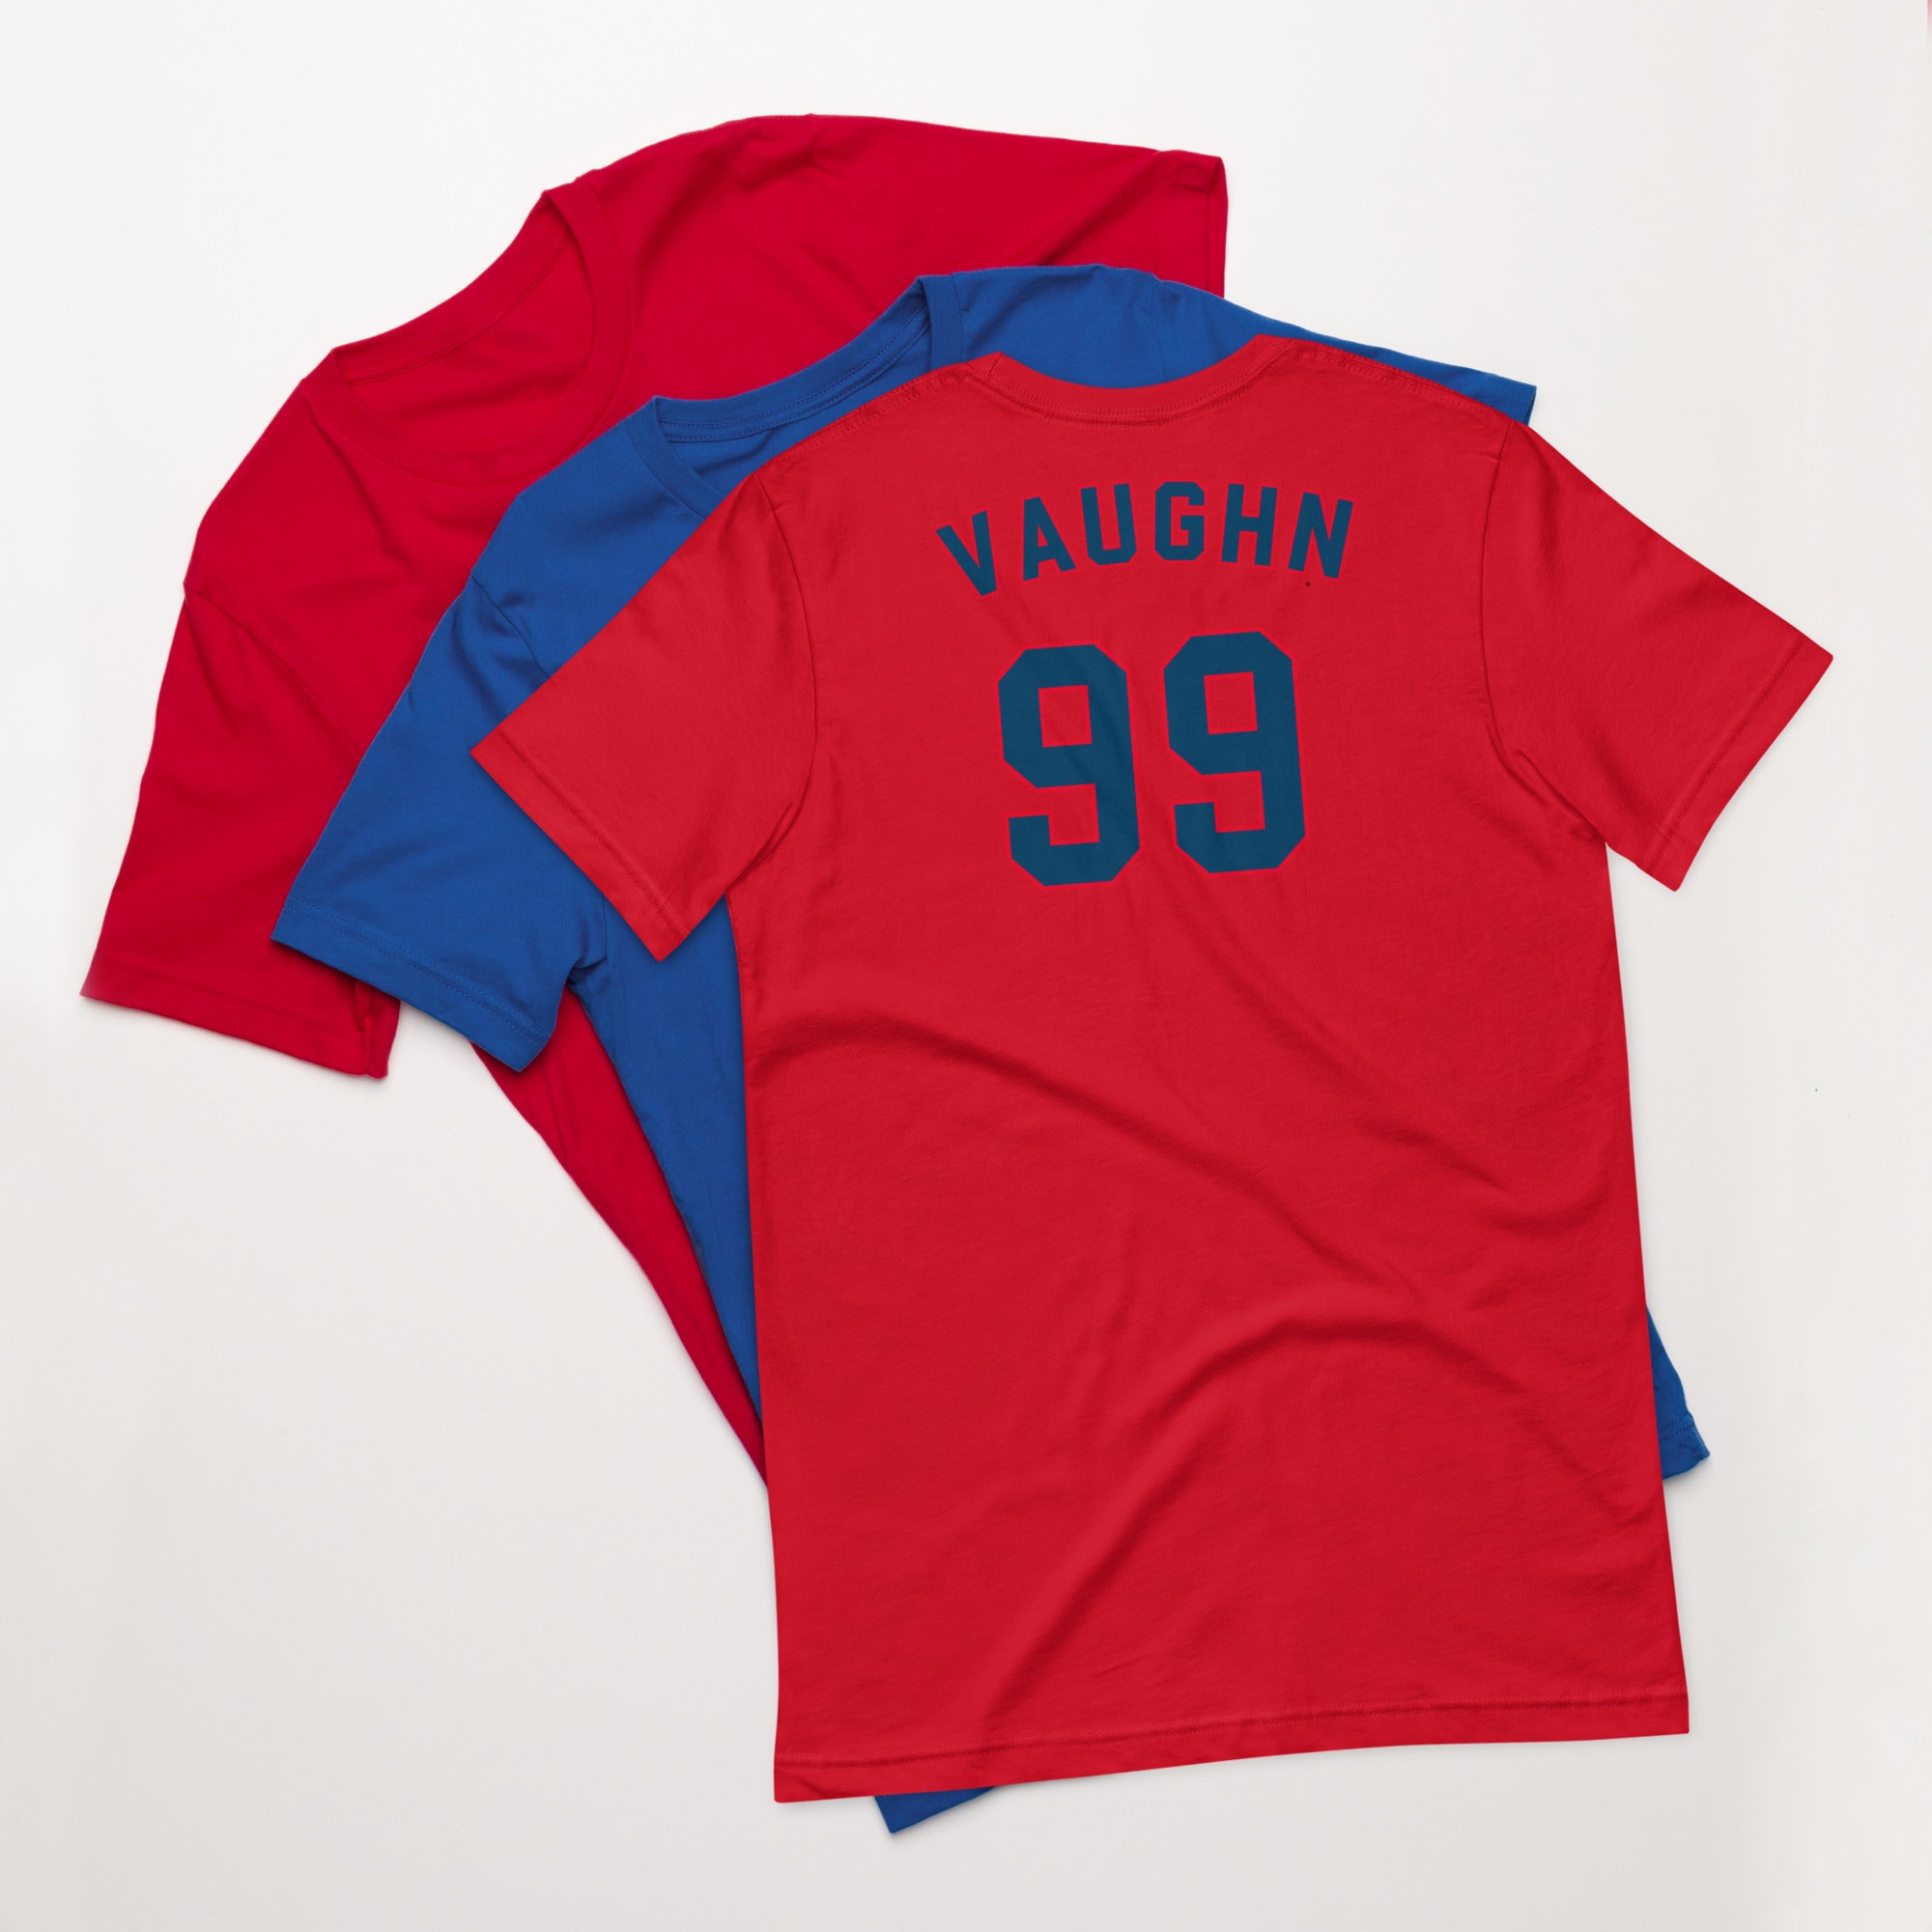 Vaughn Jersey From Major League | Essential T-Shirt